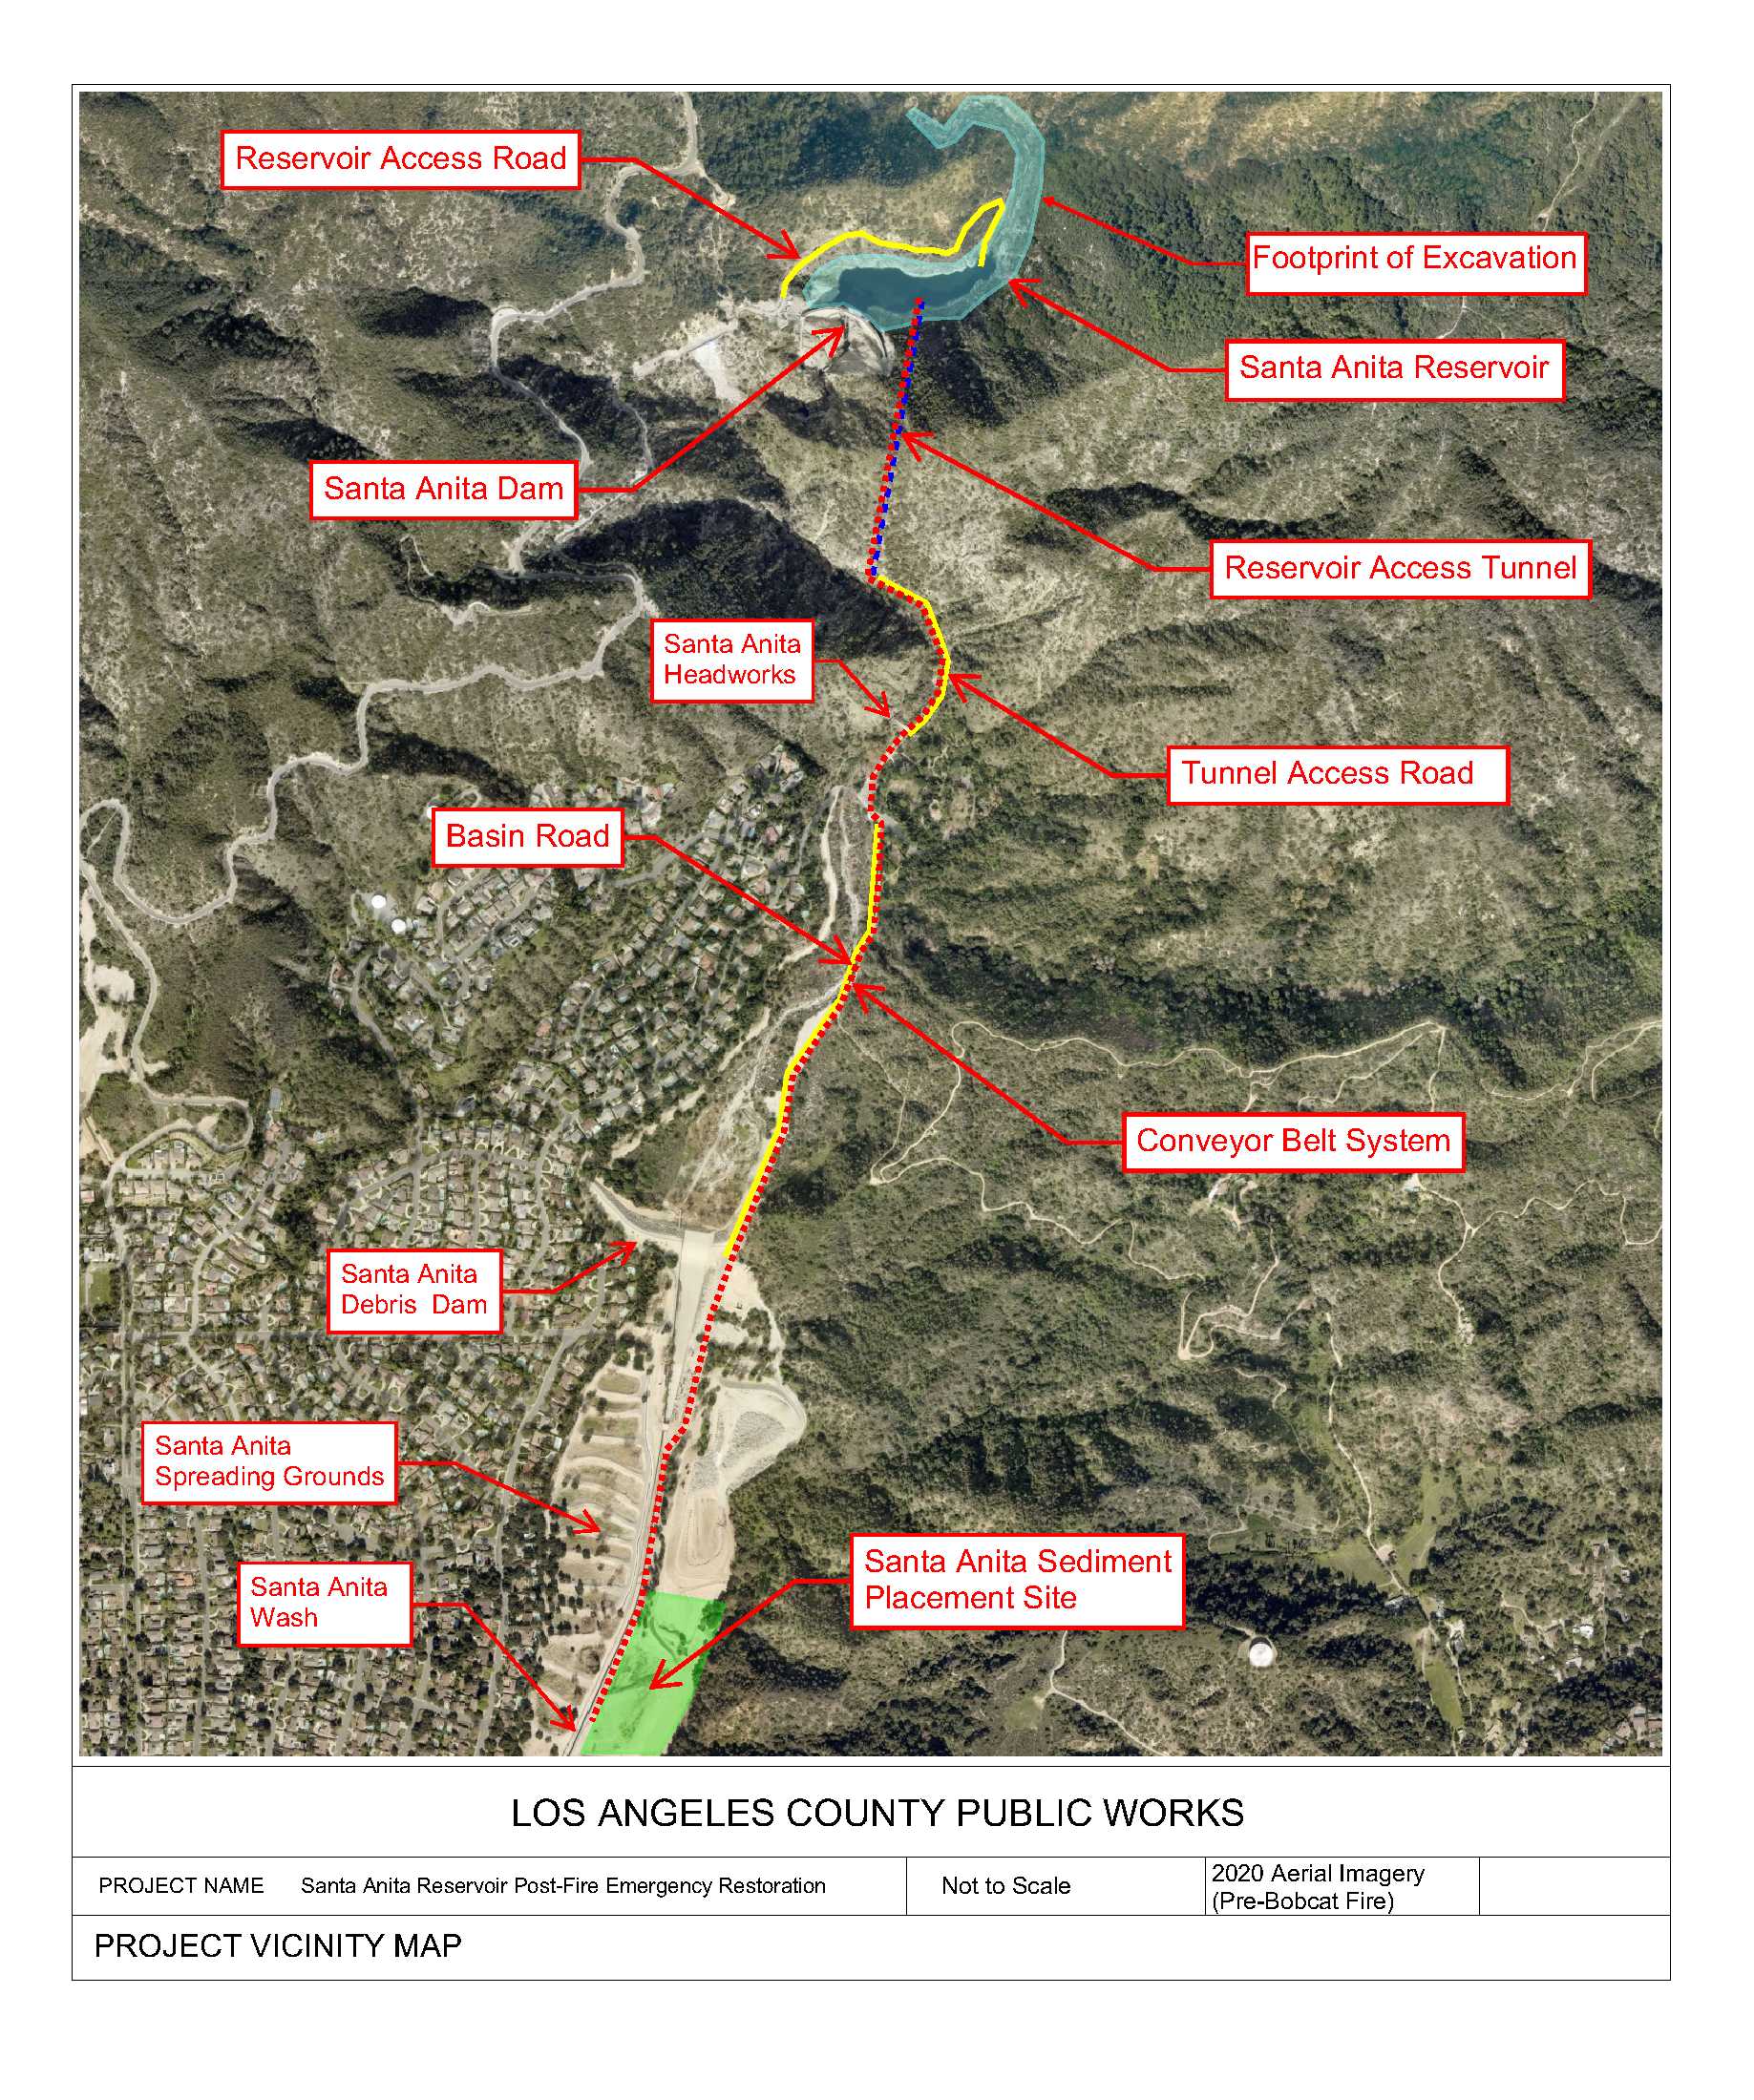 San Gabriel Dam Site plan